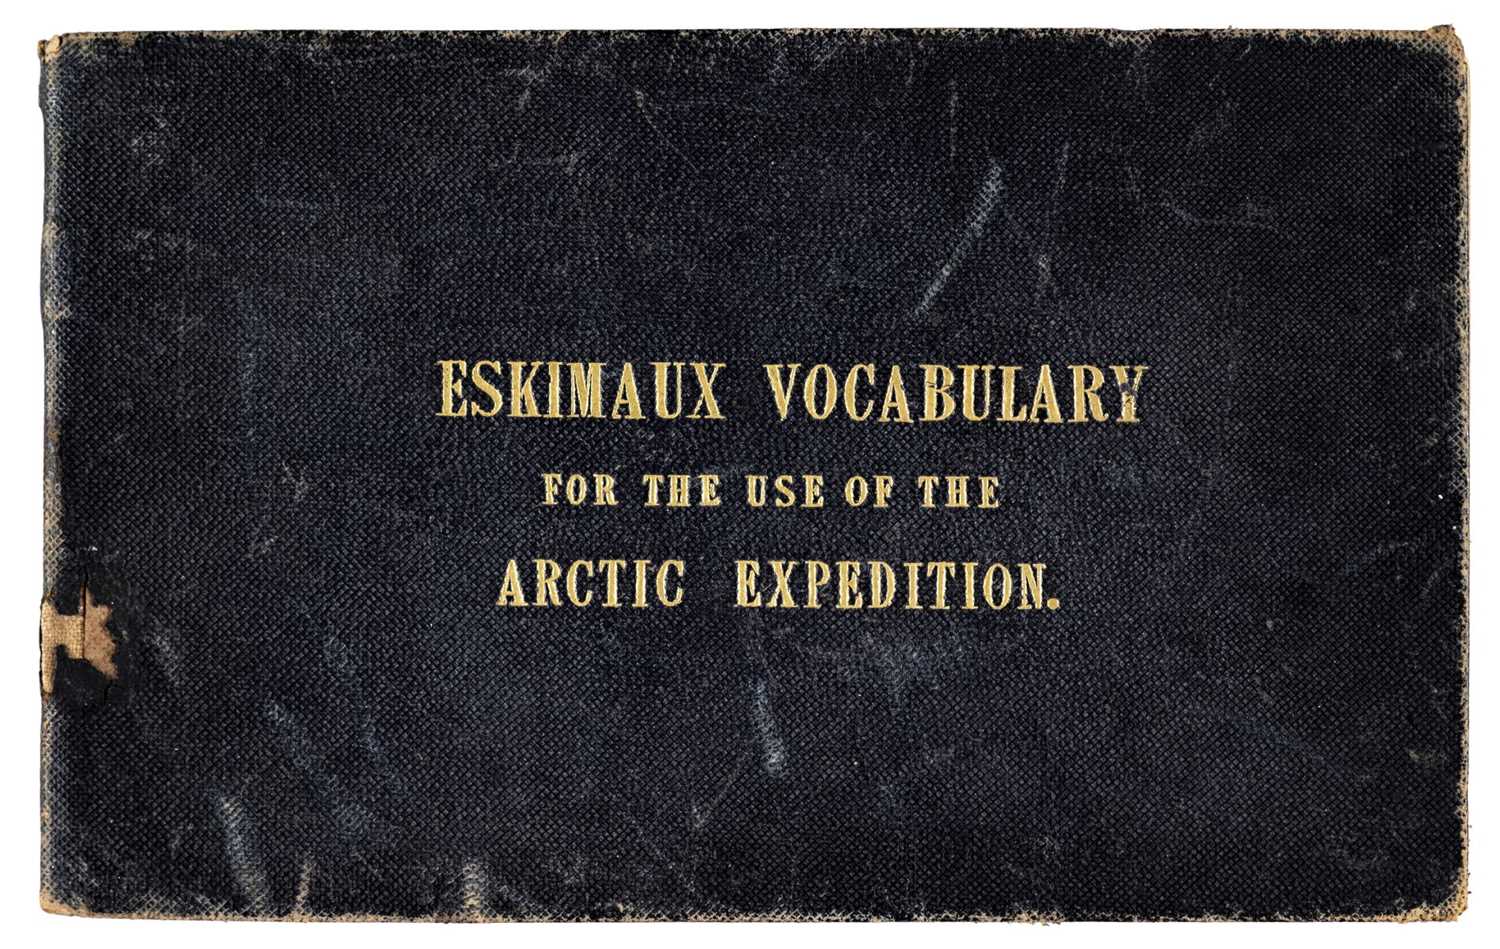 Lot 178 - Washington (John). Eskimaux and English Vocabulary, 1850